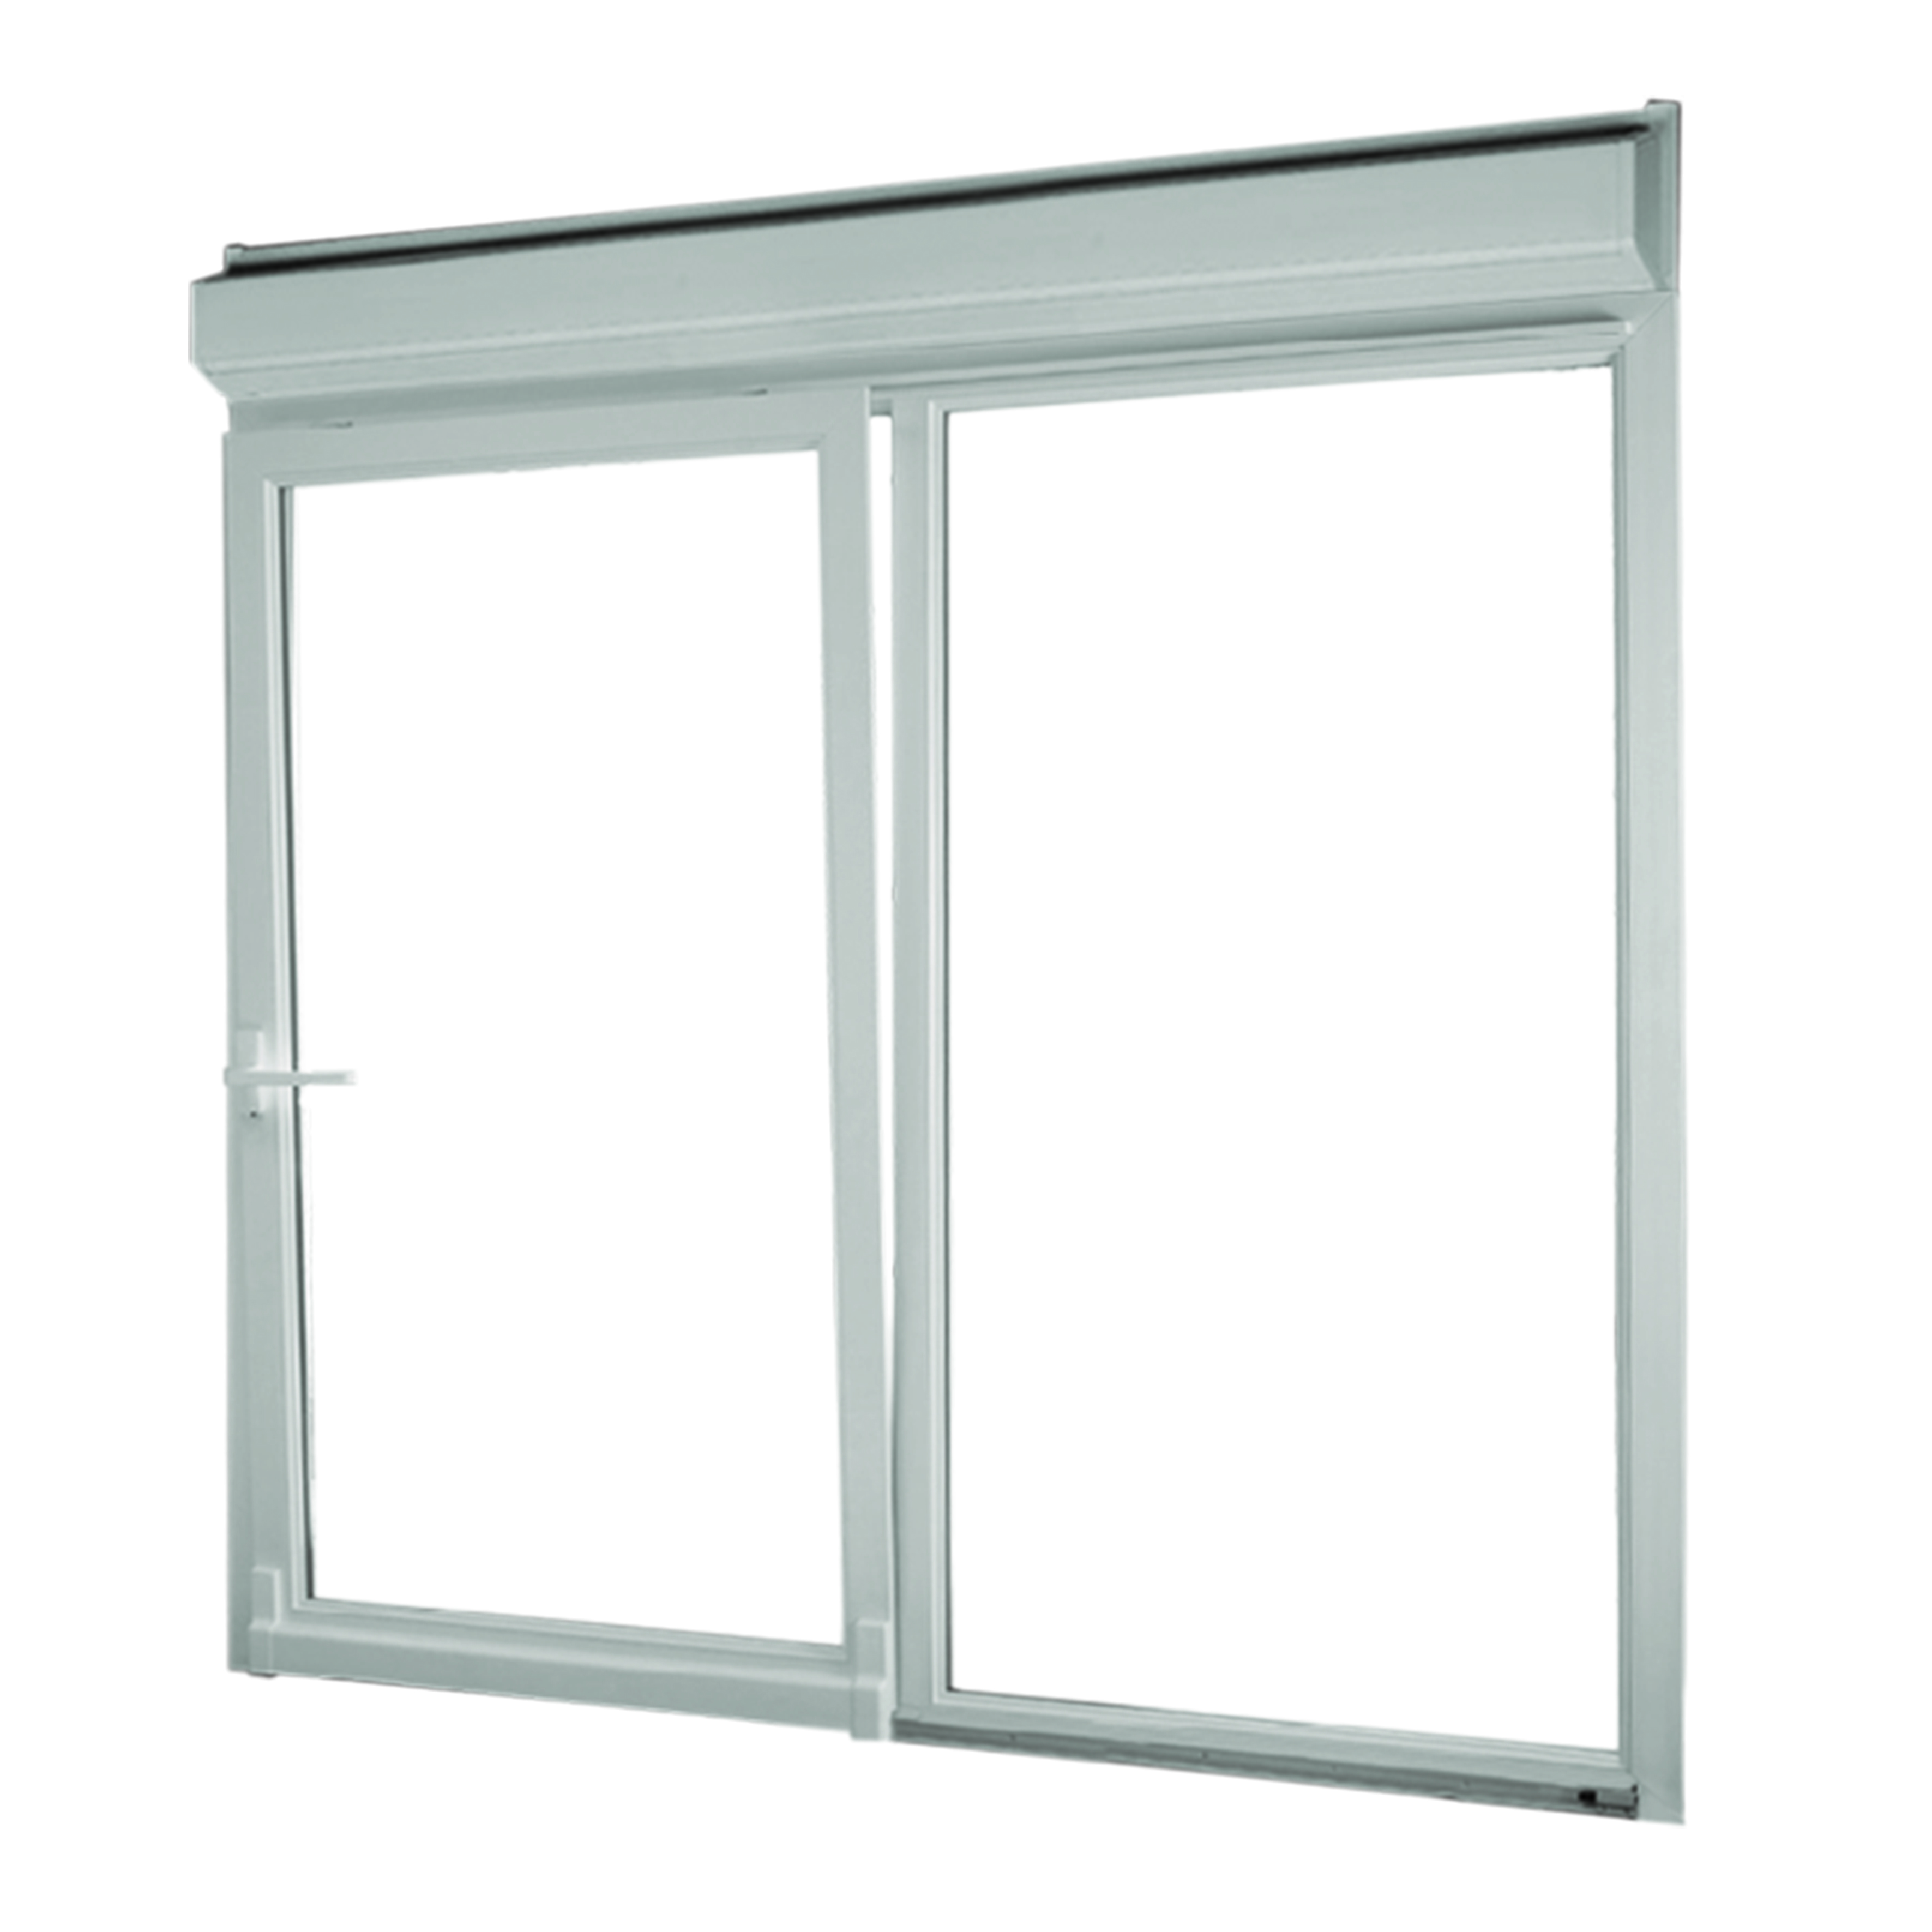 Les formes et les types d'ouverture des baies vitrées coulissantes -  Grosfillex Fenêtres